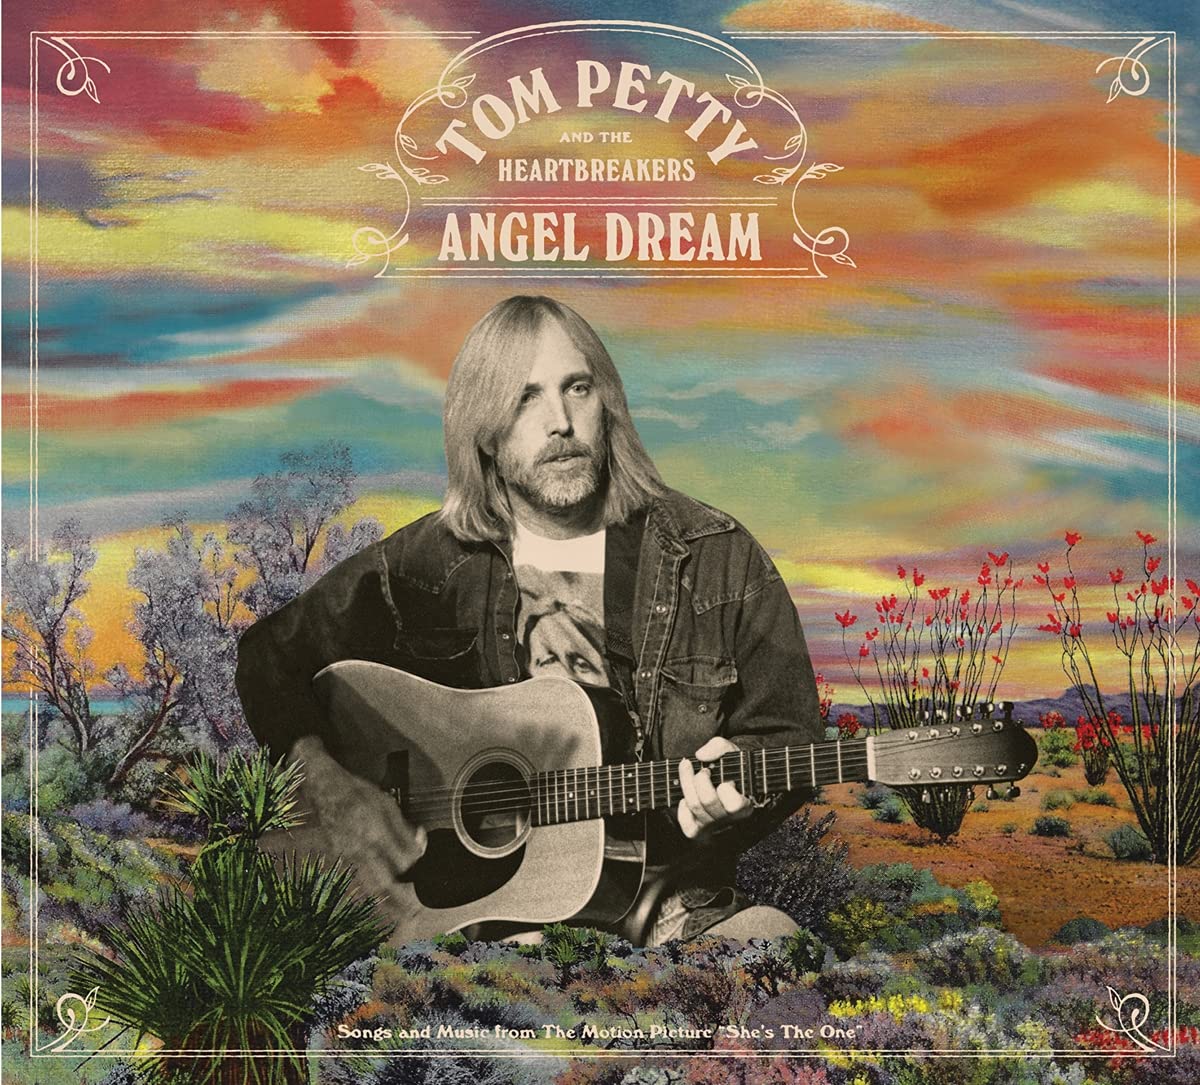 Tom Petty & The Heartbreakers – Angel Dream